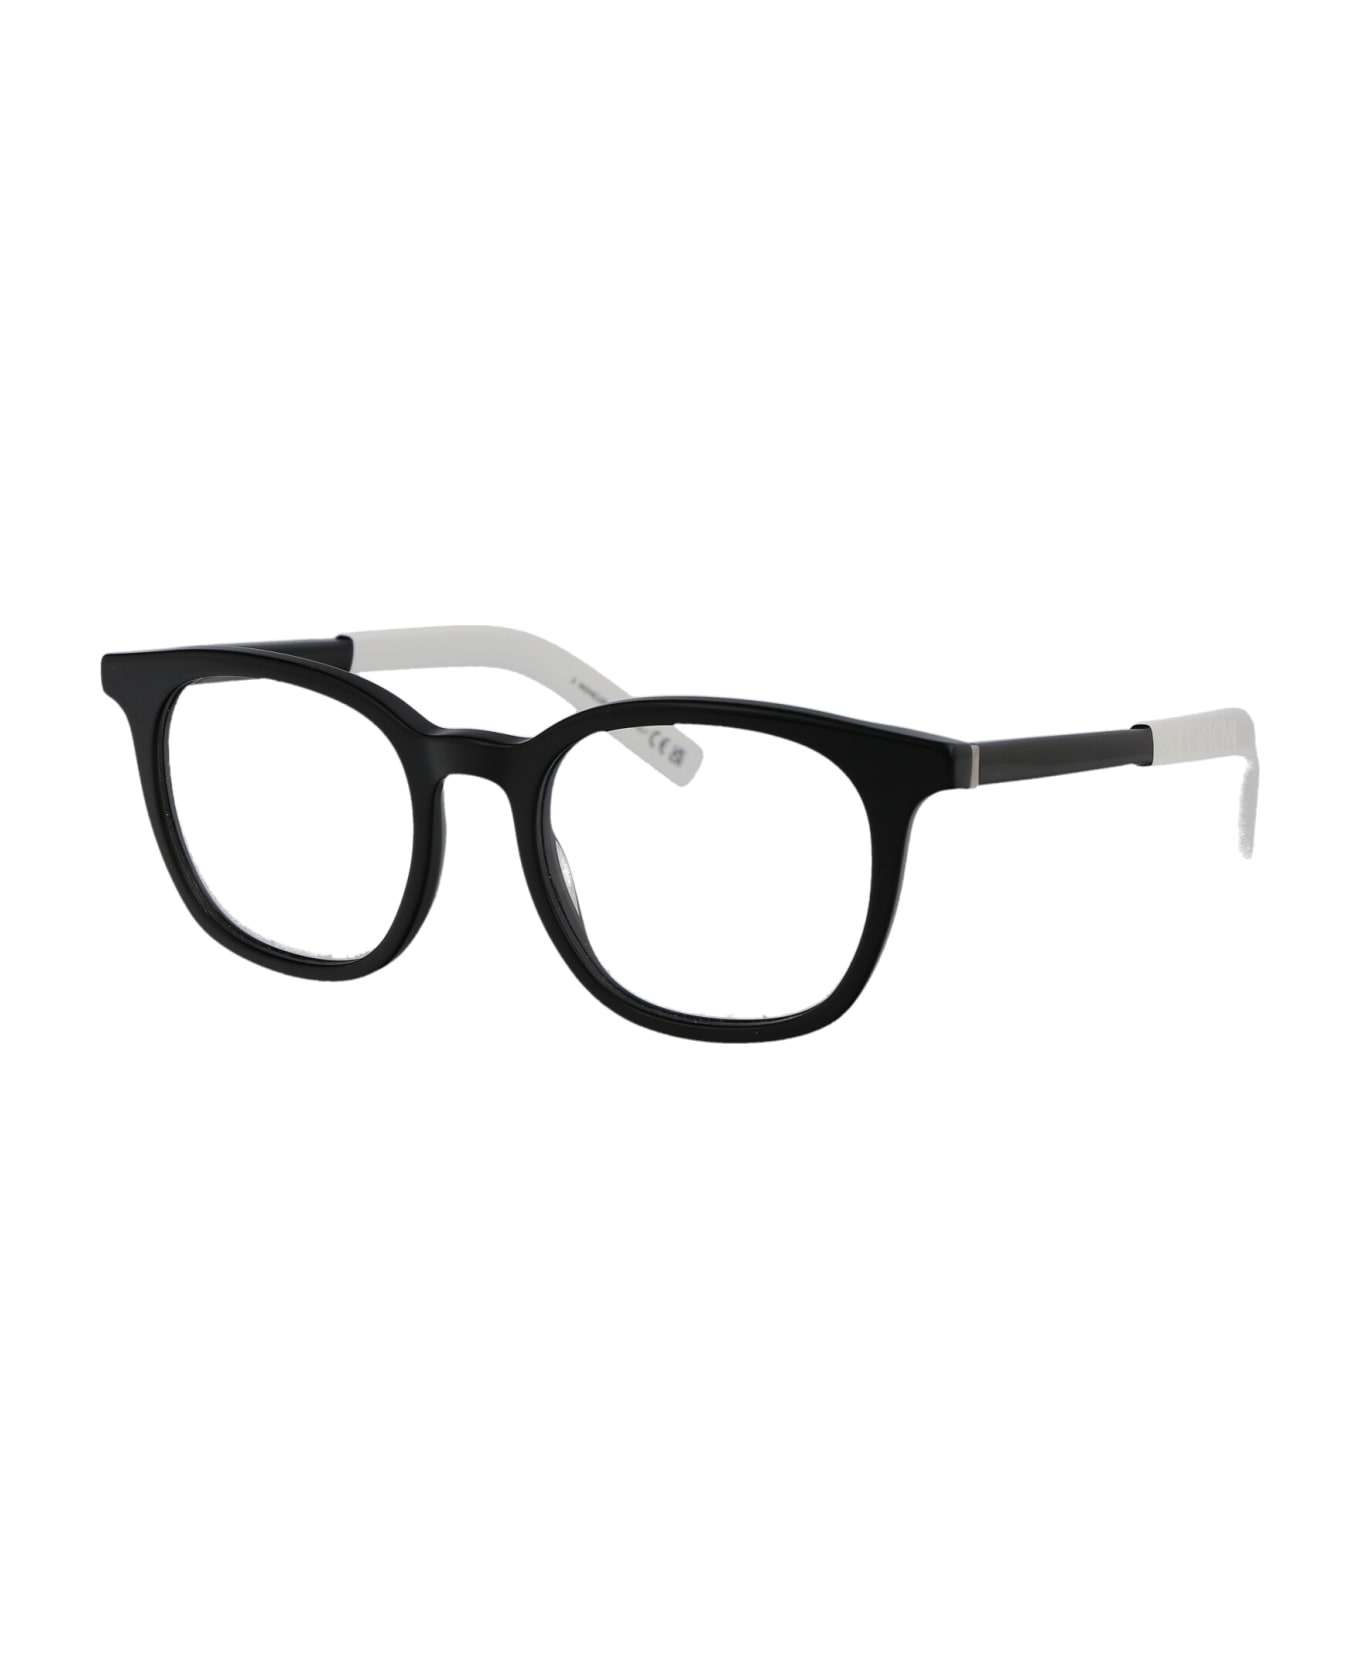 Moncler Eyewear Ml5207 Glasses - 001 Nero Lucido